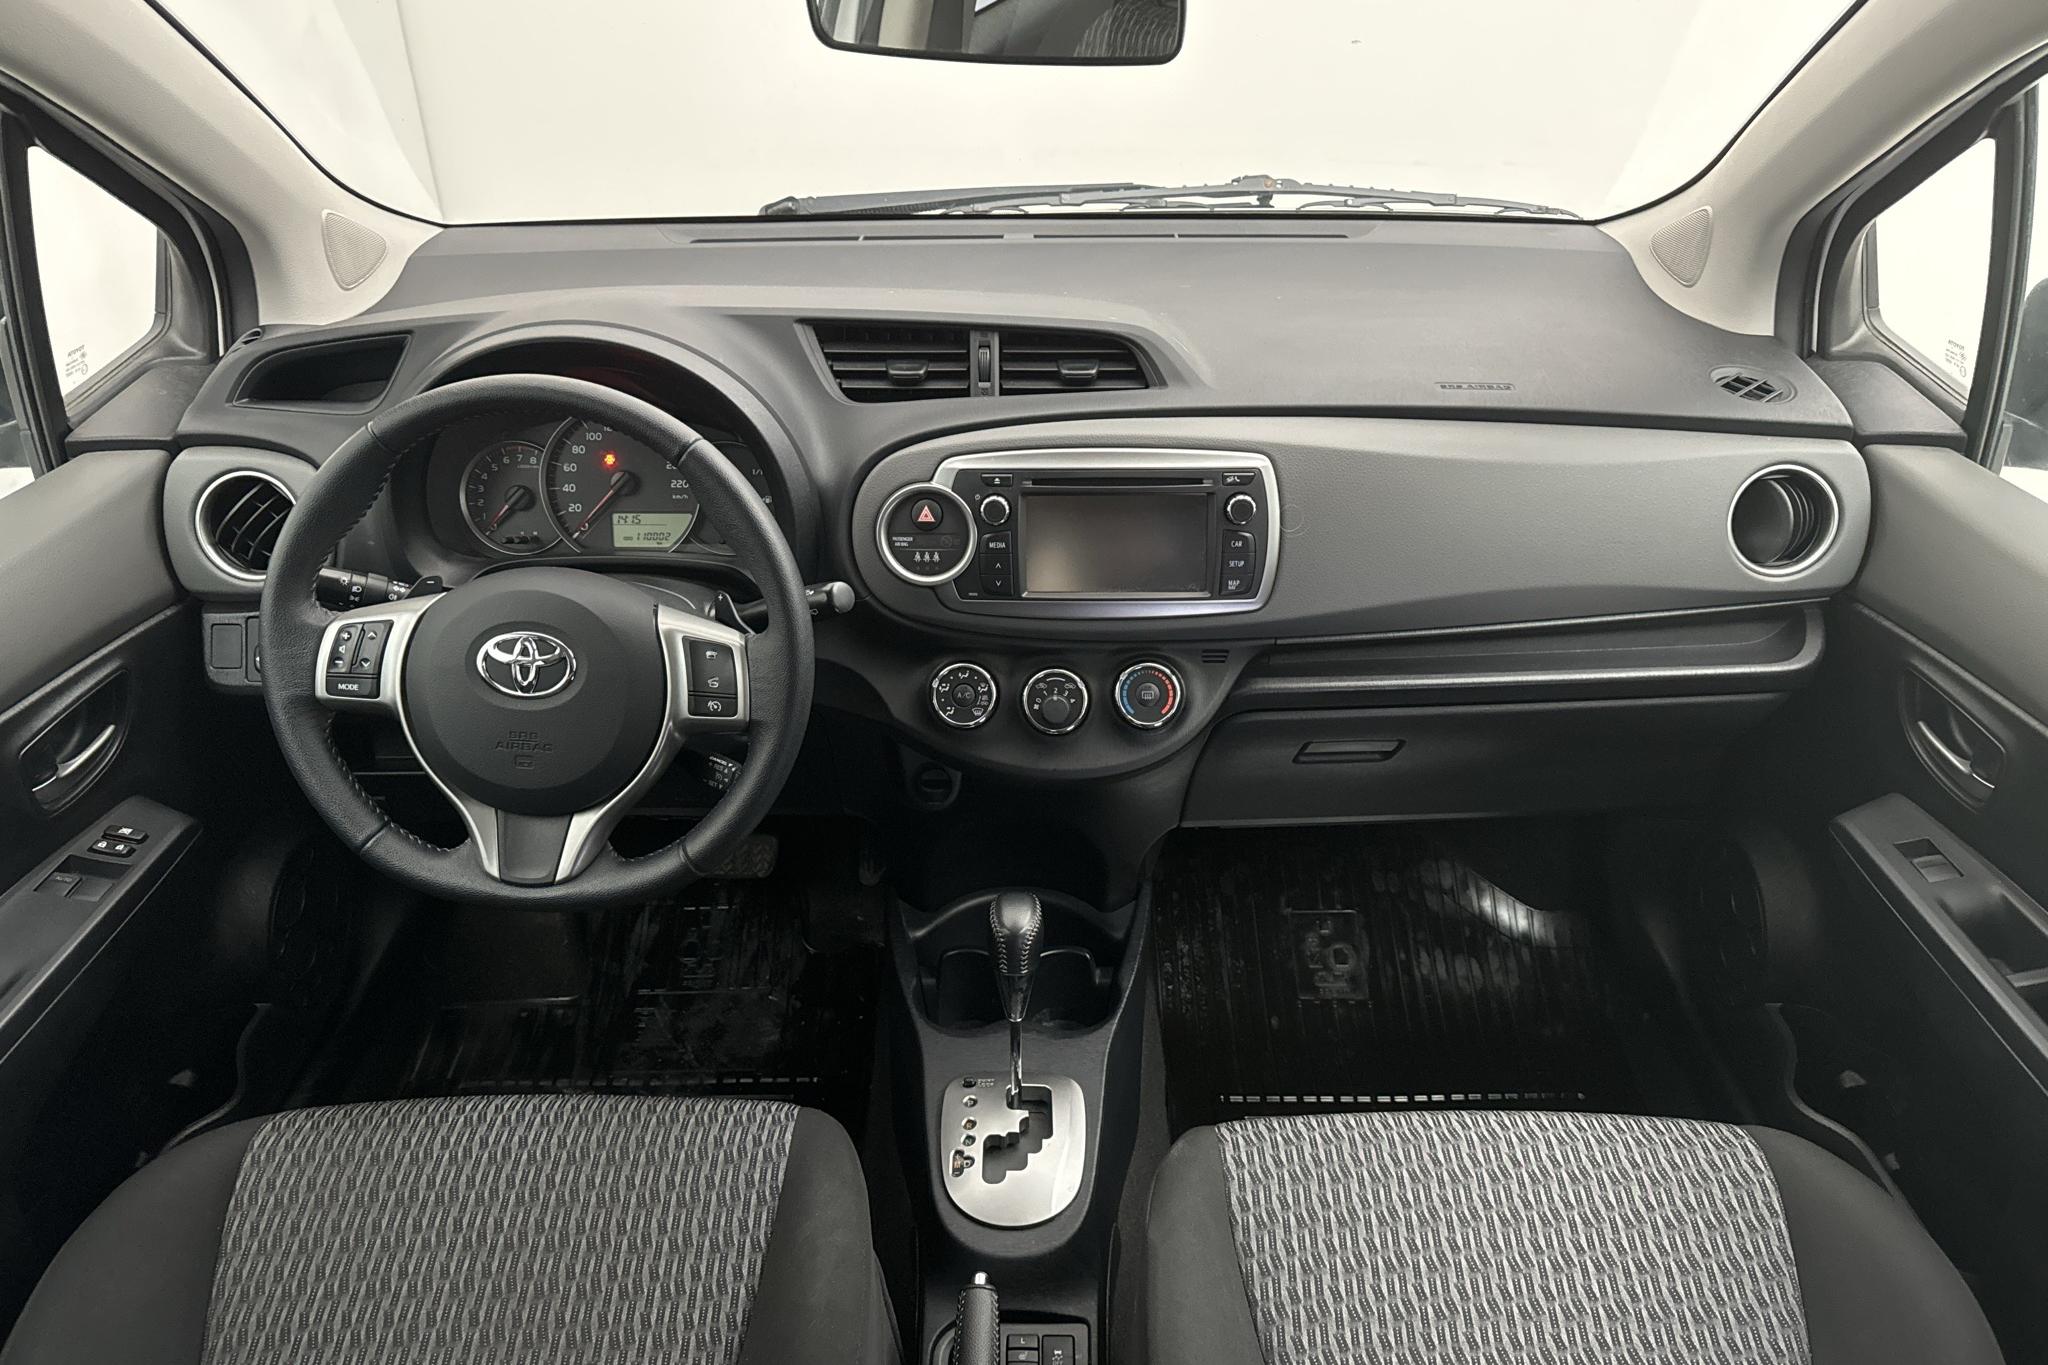 Toyota Yaris 1.33 5dr (100hk) - 11 000 mil - Automat - vit - 2014